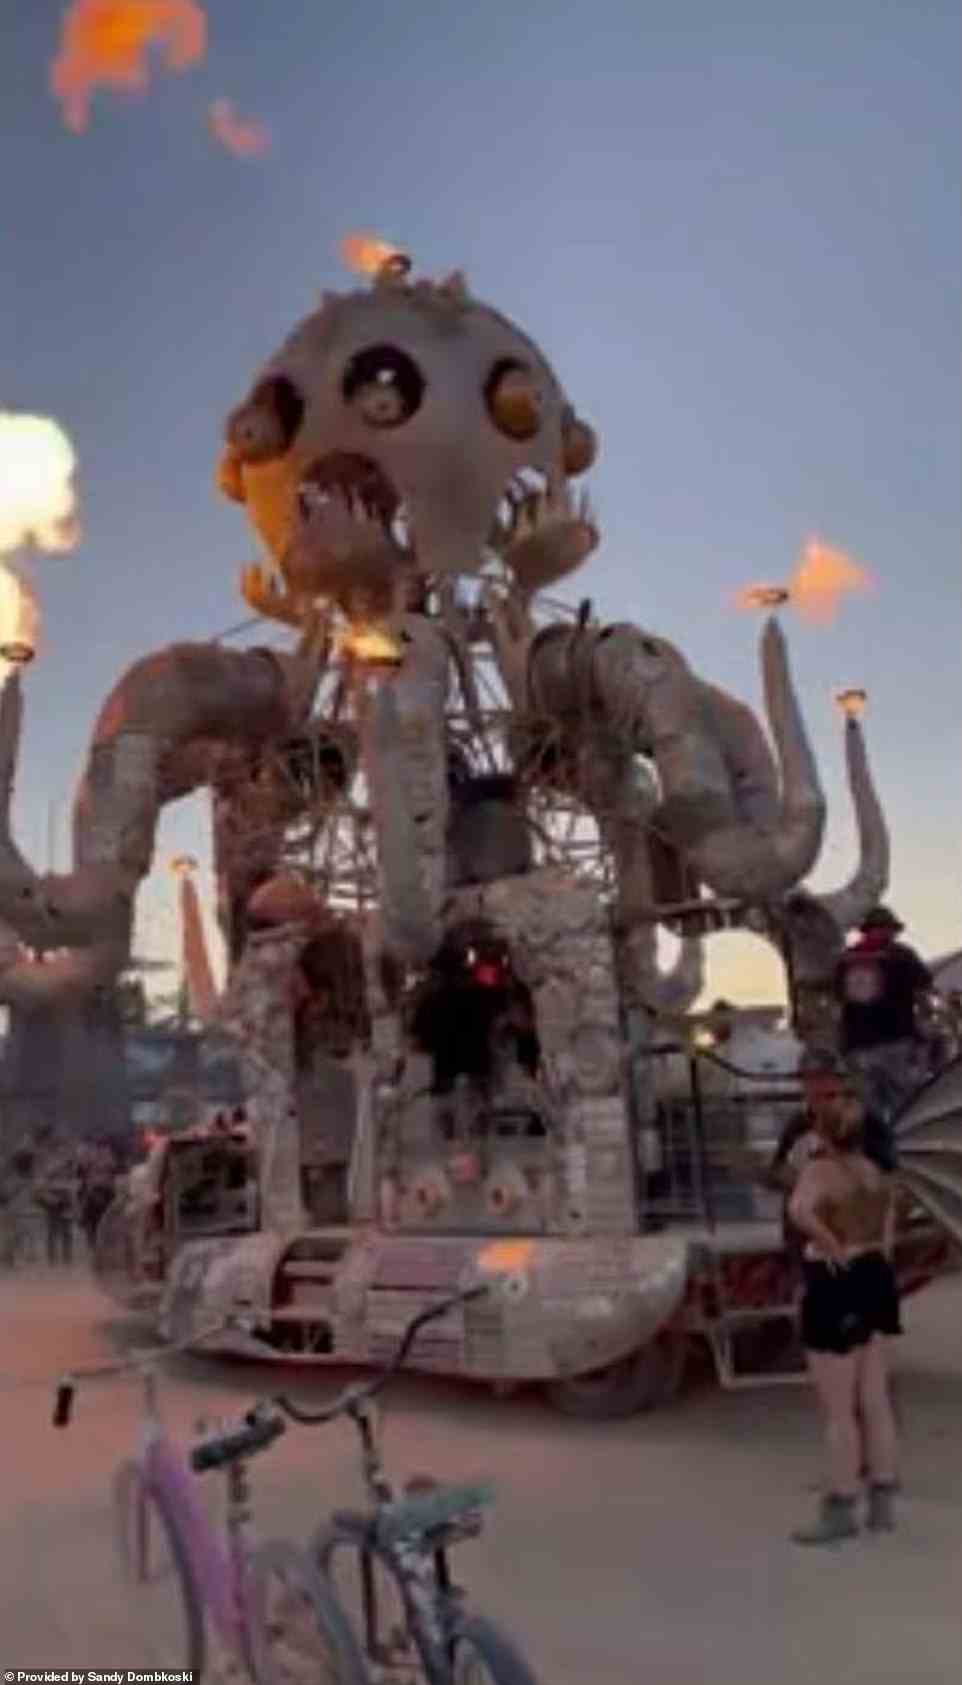 Am letzten Tag von Burning Man sieht man einen feurigen Oktopus, der durch die Wüste kriecht